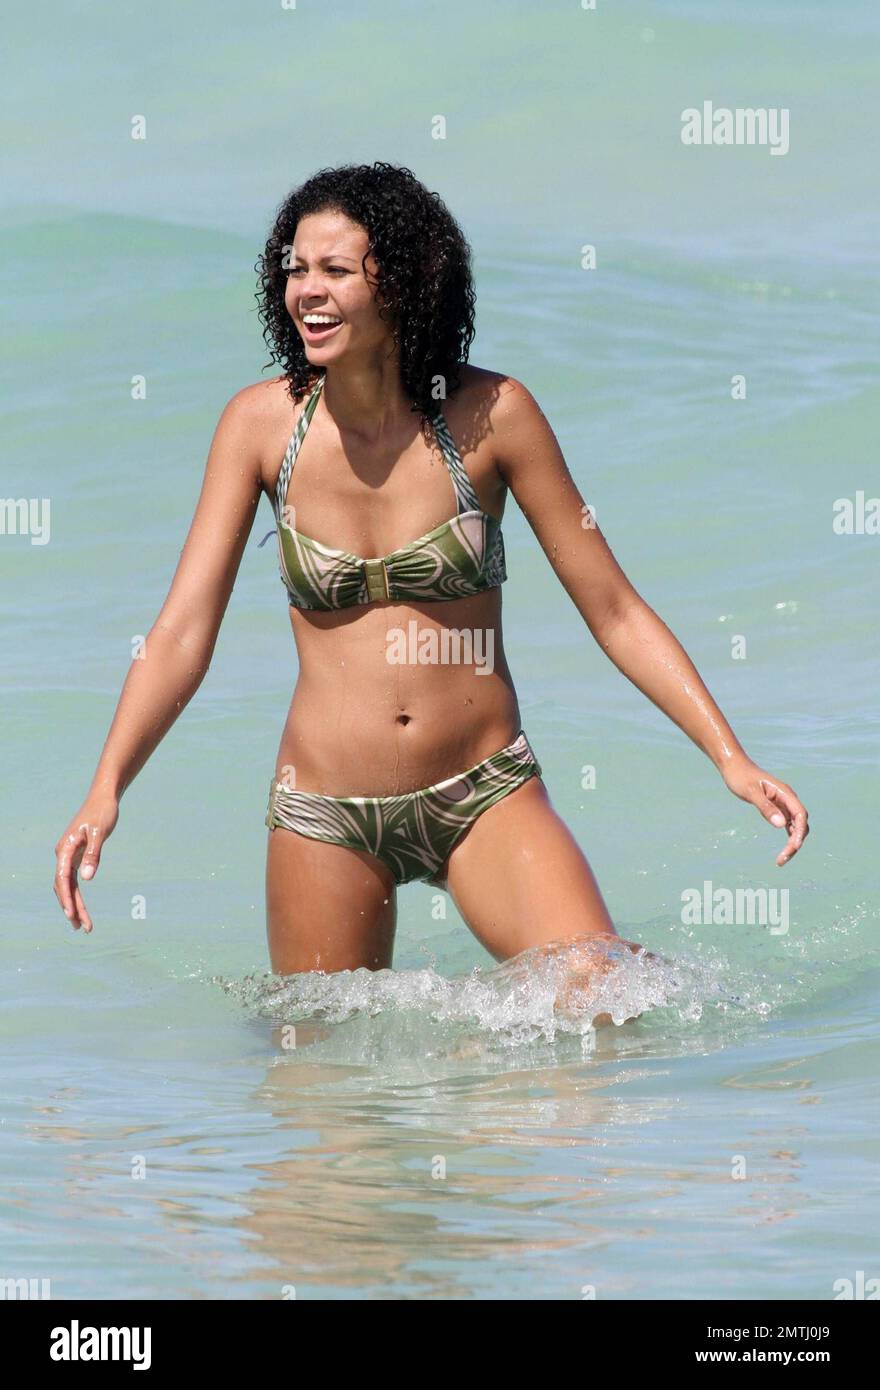 Chelsea Forward Salomon Kalou lächelt, wenn er einen Tag mit seiner Freundin  in Miami Beach verbringt. Das Paar schwamm im warmen Ozean. Kalou, der mit  seinen felsenharten bauchmuskeln zeigt, fand auch Zeit,